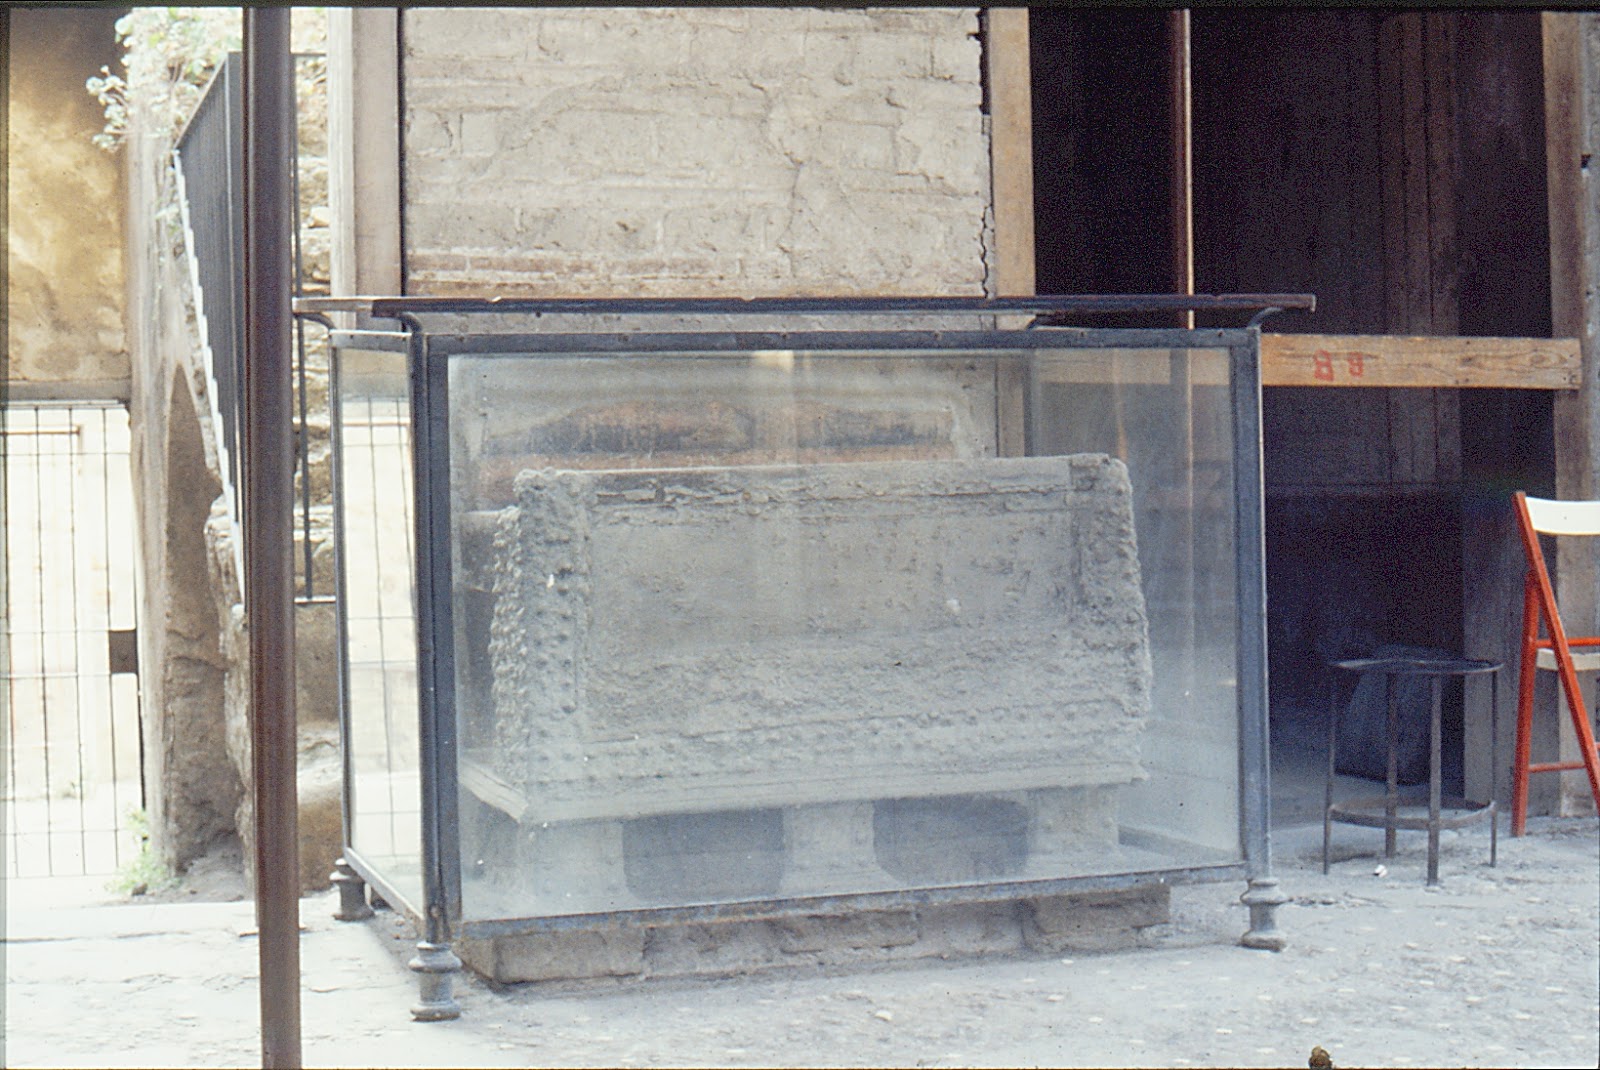 Casa de los Vetii. 3. Atrio, izquierda - Arca con laterales de bronce; había otra igual en la pared de enfrente